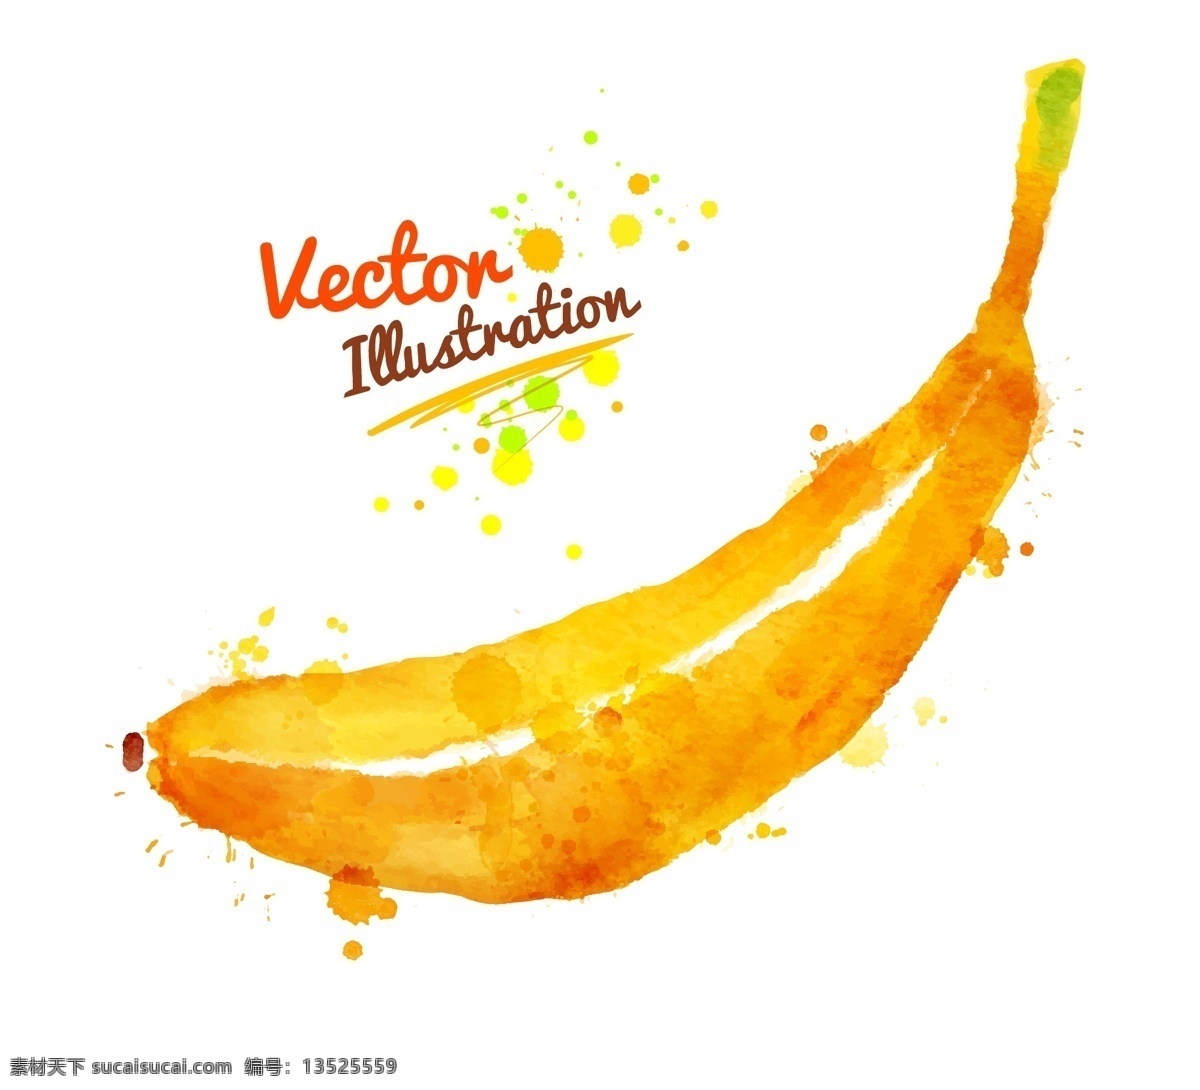 香蕉 创意 喷溅 水彩 墨迹 水果 蔬菜 矢量 黄色 插画 水墨 手绘 墨点